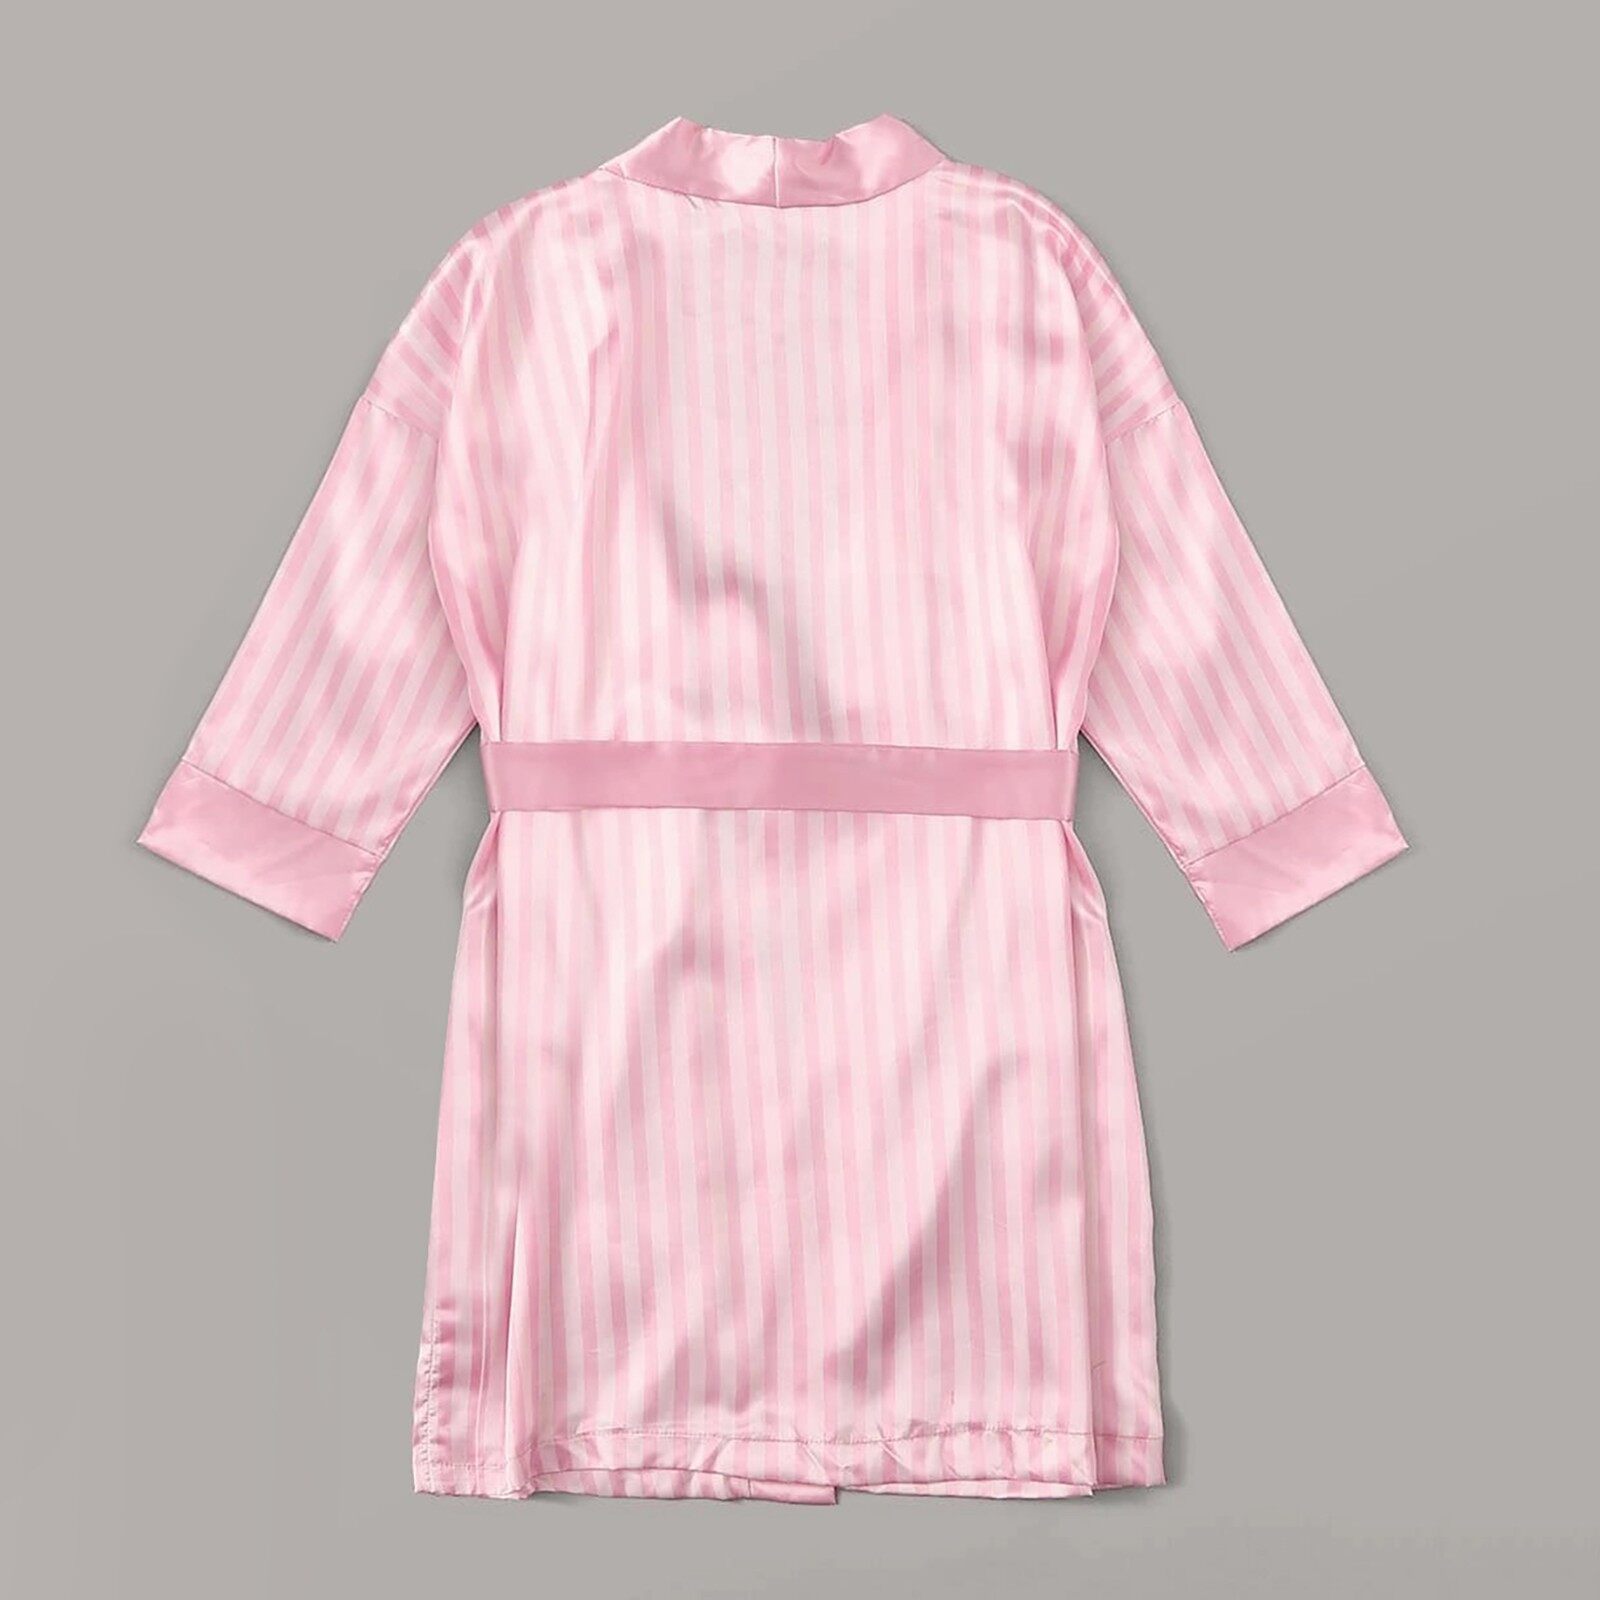 SJWY Đồ Ngủ Bằng Lụa Satin Váy Ngủ Cho Nữ Đồ Lót Áo Choàng Đồ Lót Đồ Ngủ Polyester Gợi Cảm Màu Hồng L 4